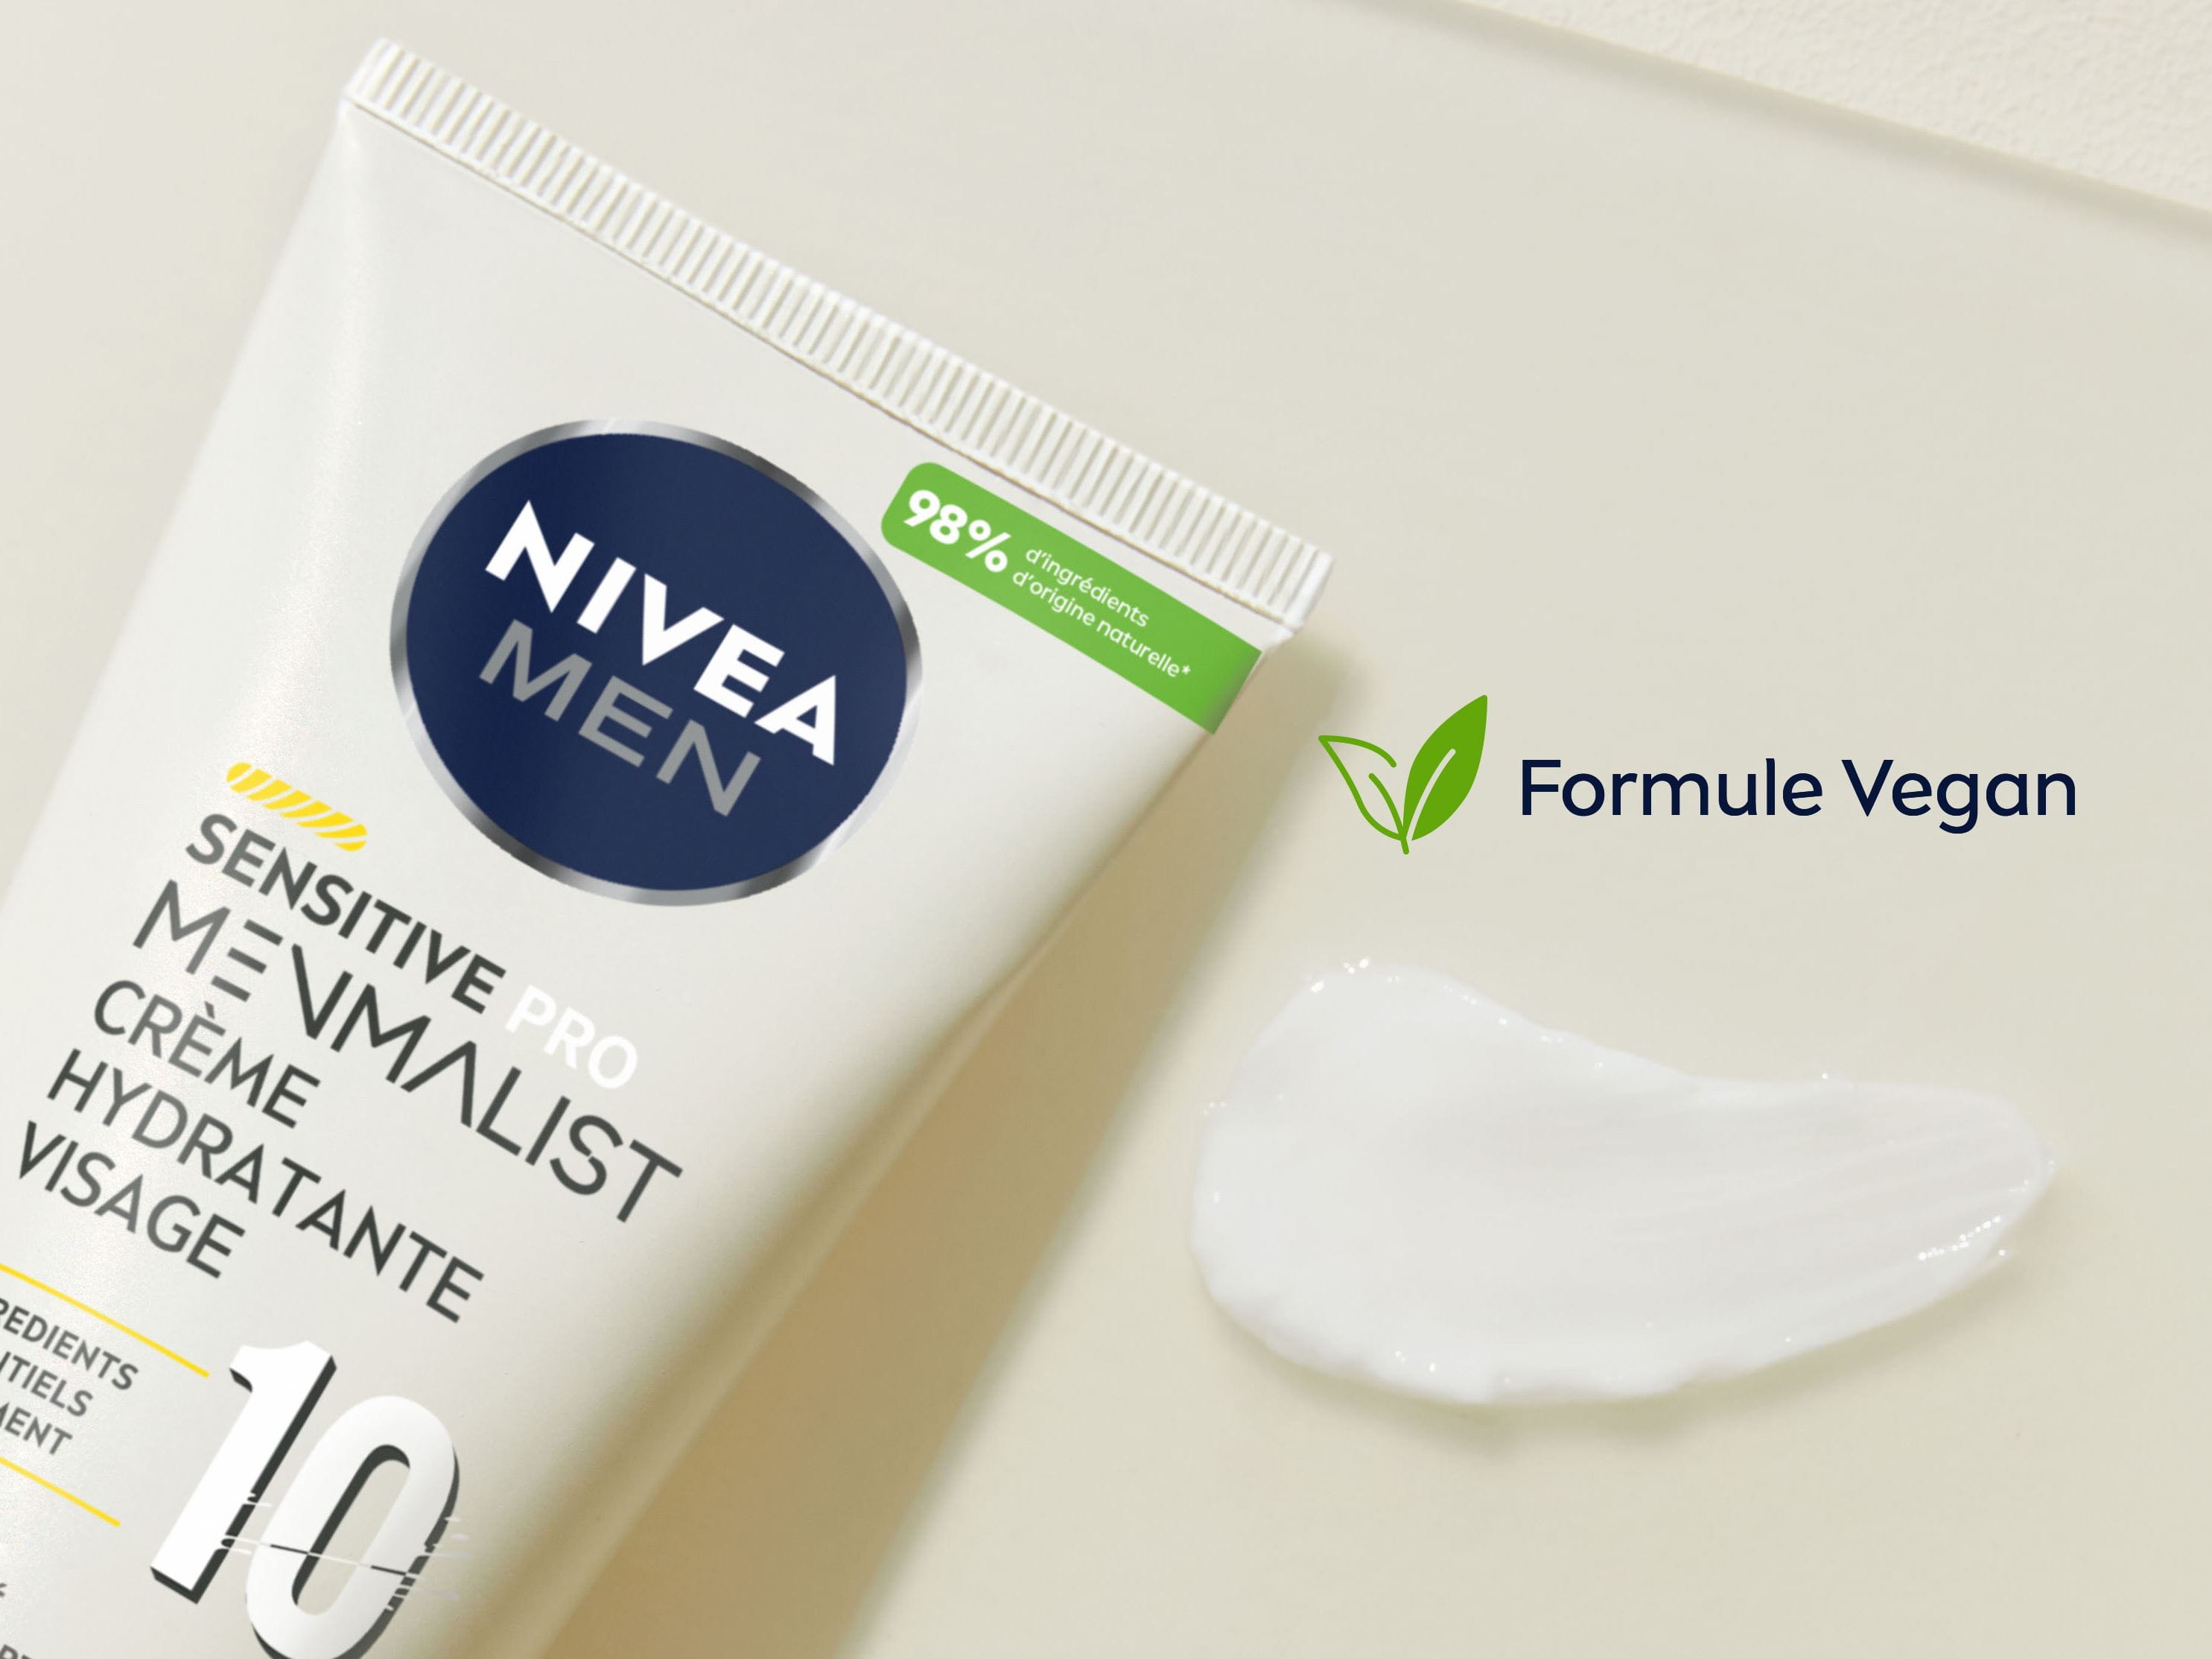 New NIVEA MEN Sensitive Pro Menmalist Face Cream and Sustainability